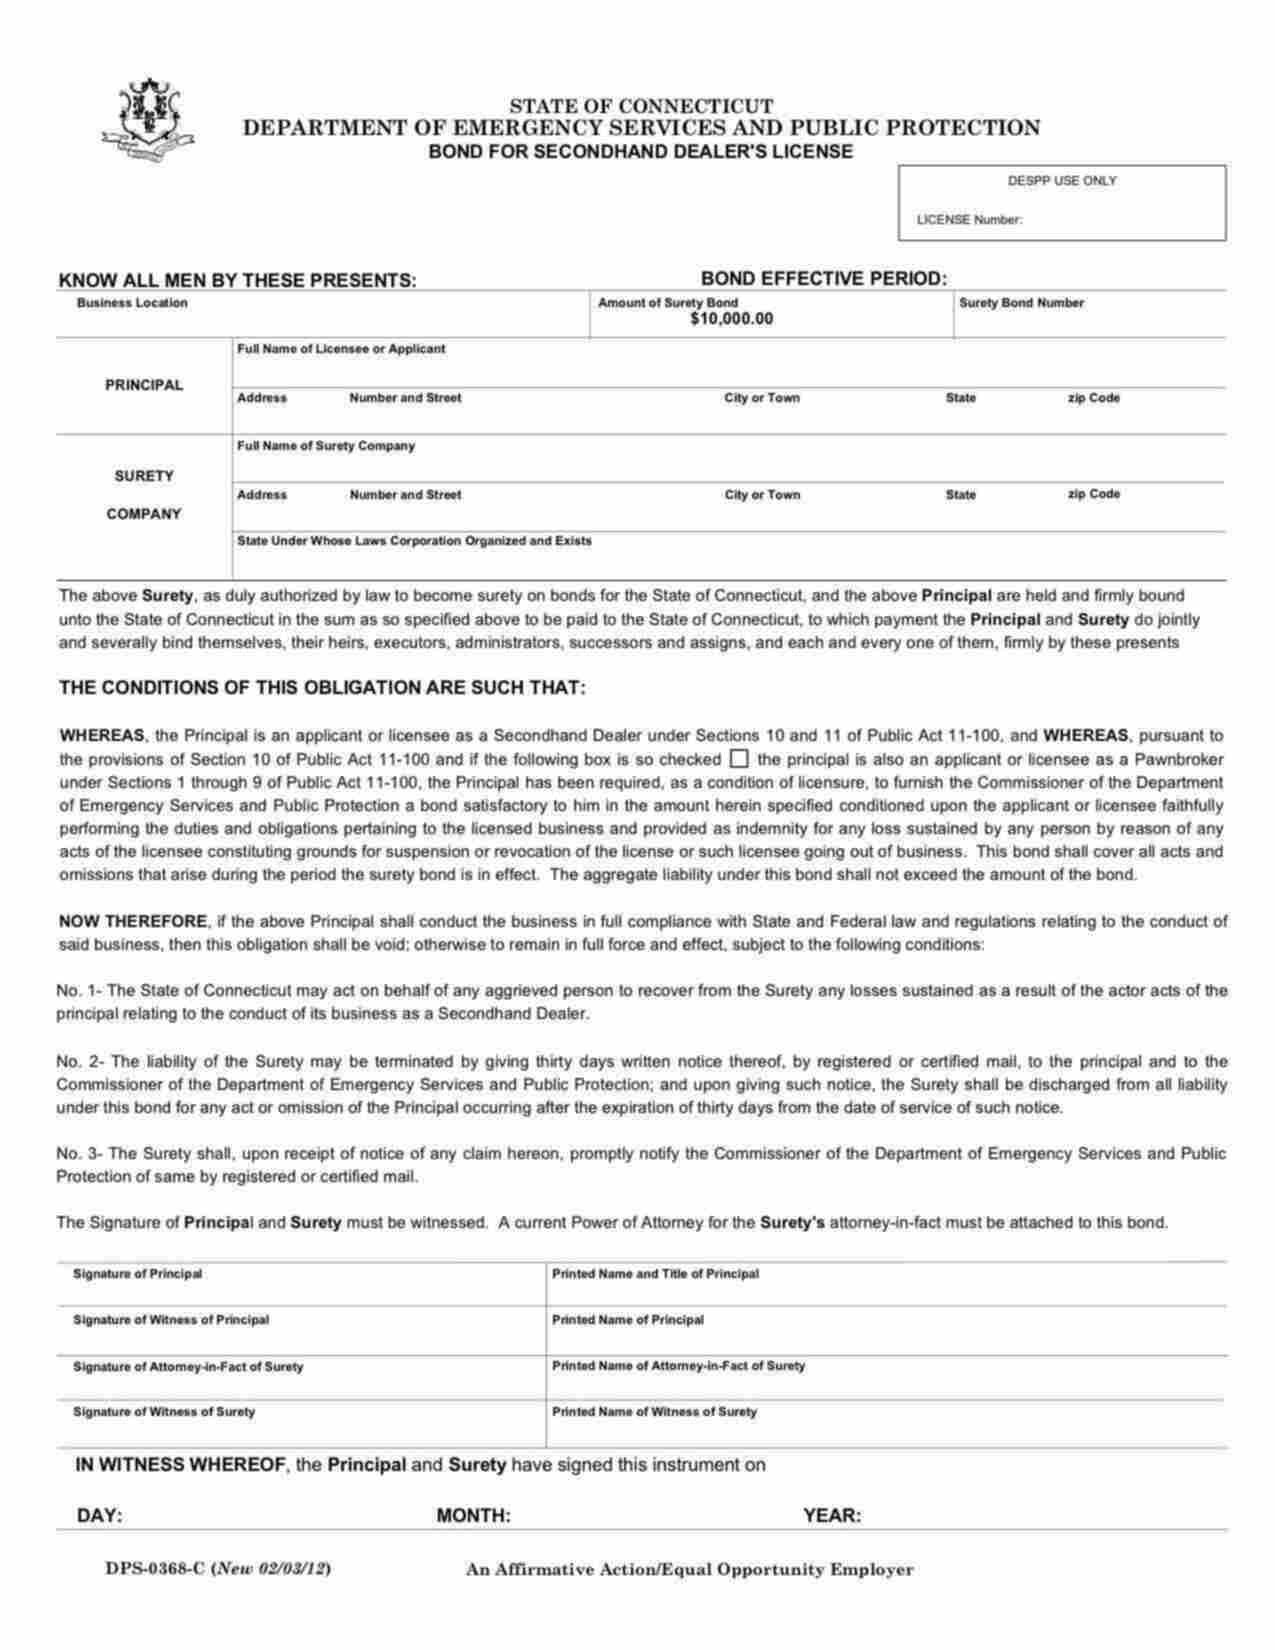 Connecticut Secondhand Dealer's License Bond Form